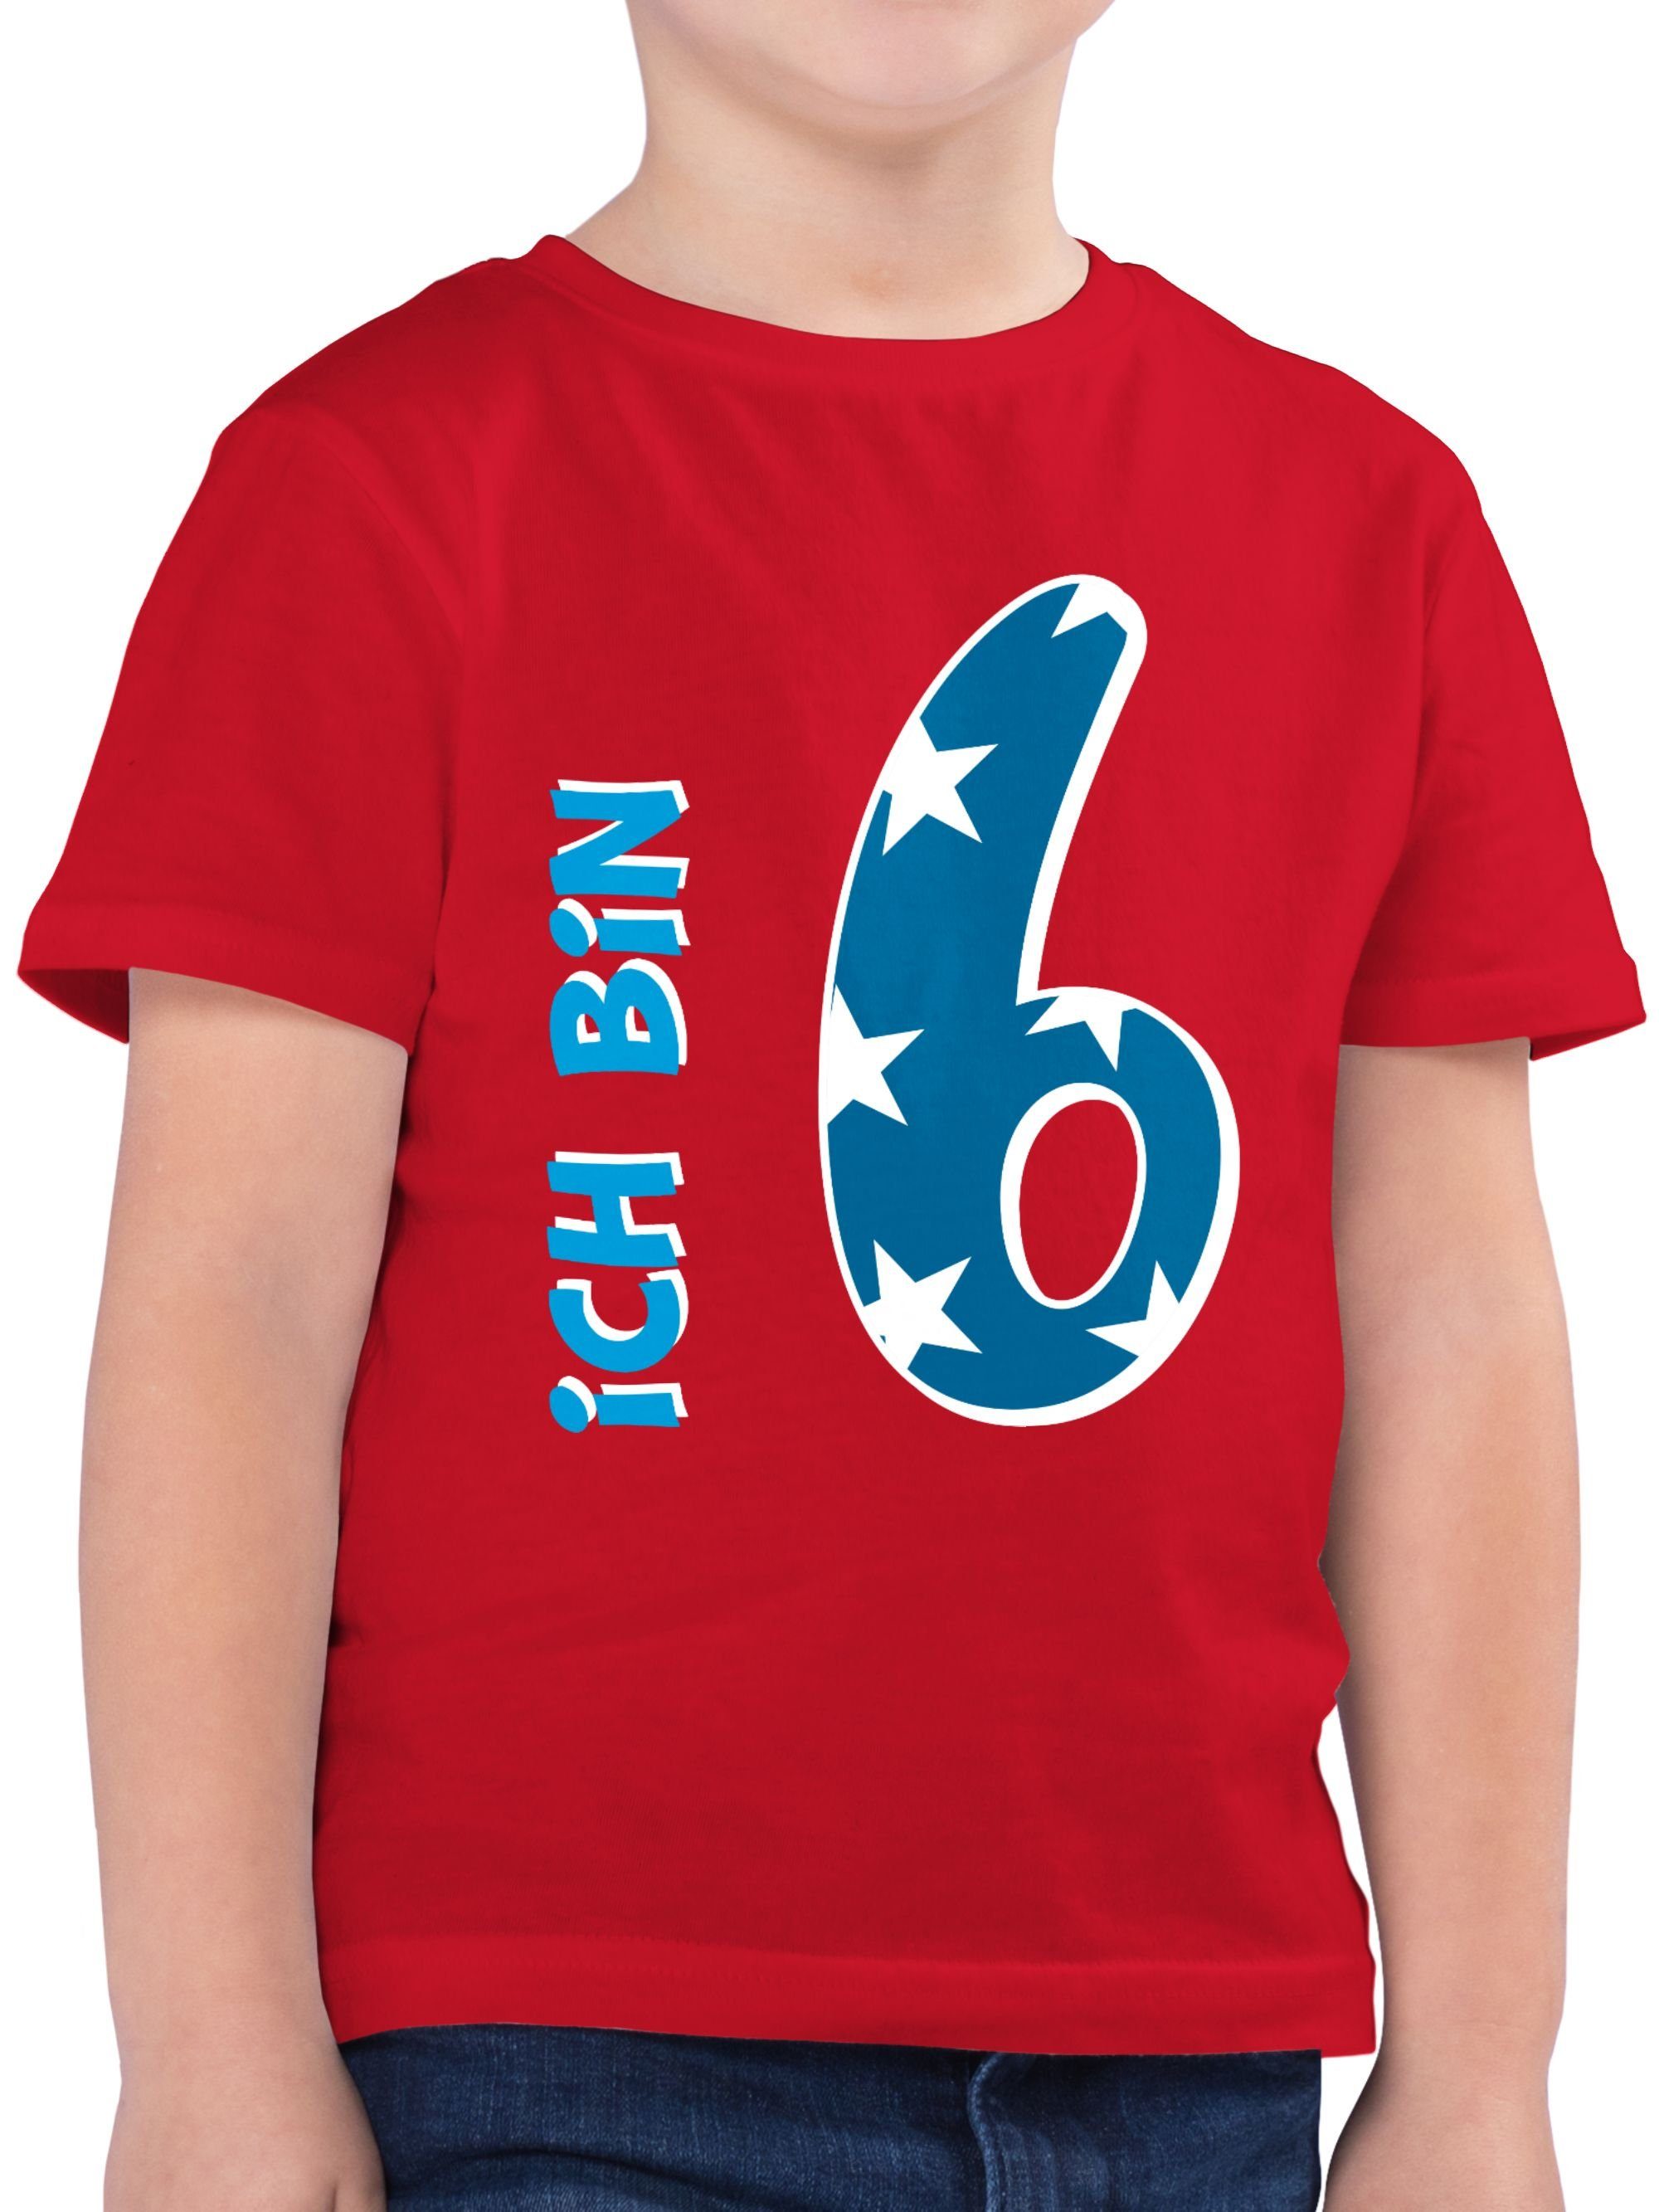 Shirtracer T-Shirt Ich bin sechs Blau Junge 6. Geburtstag 02 Rot